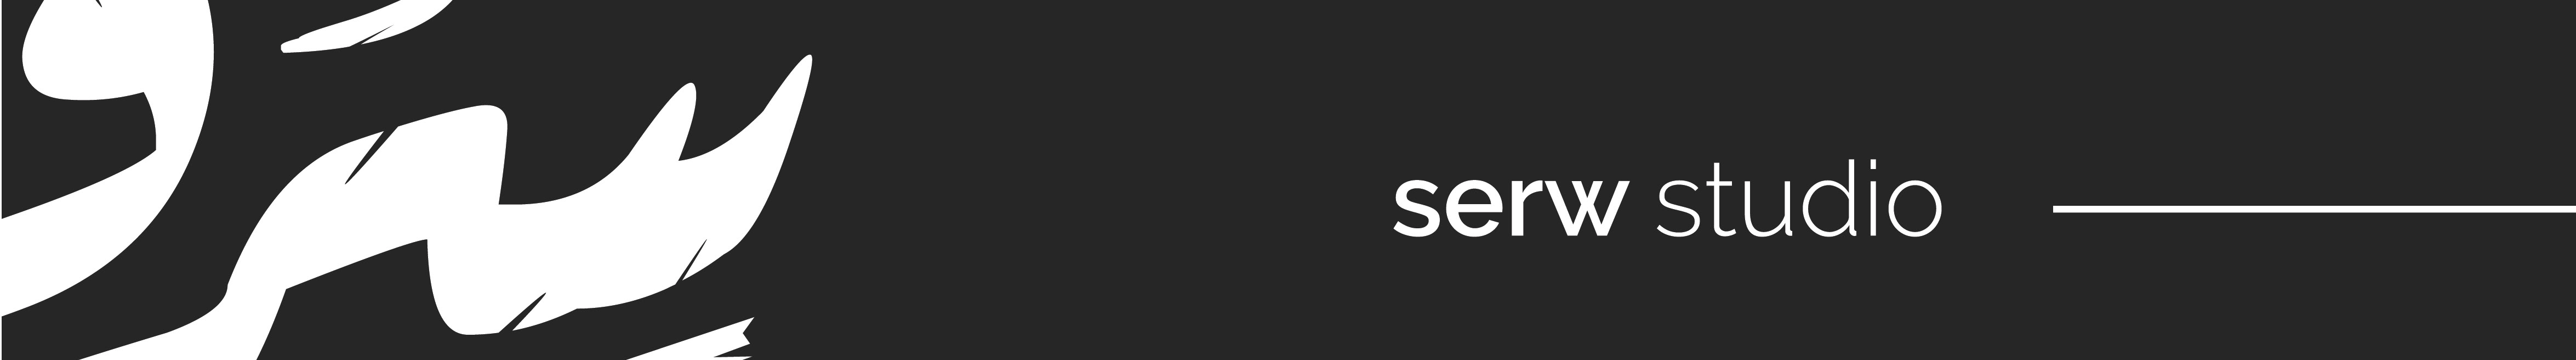 Serw studio's profile banner